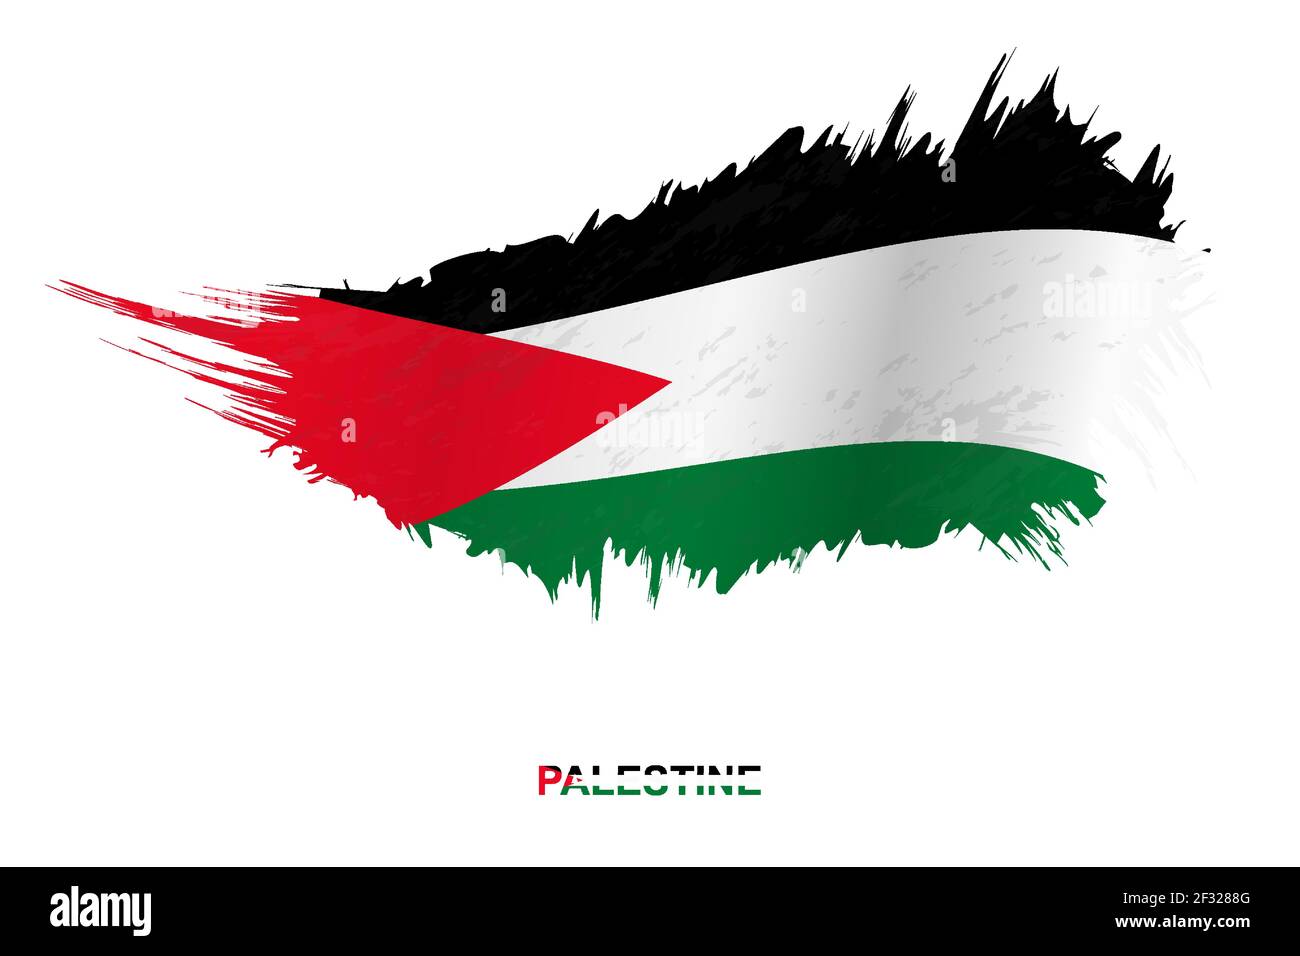 Bandera Palestina En Fondo De Pincel Redondeado Stock de ilustración -  Ilustración de democracia, acuerdo: 263305738